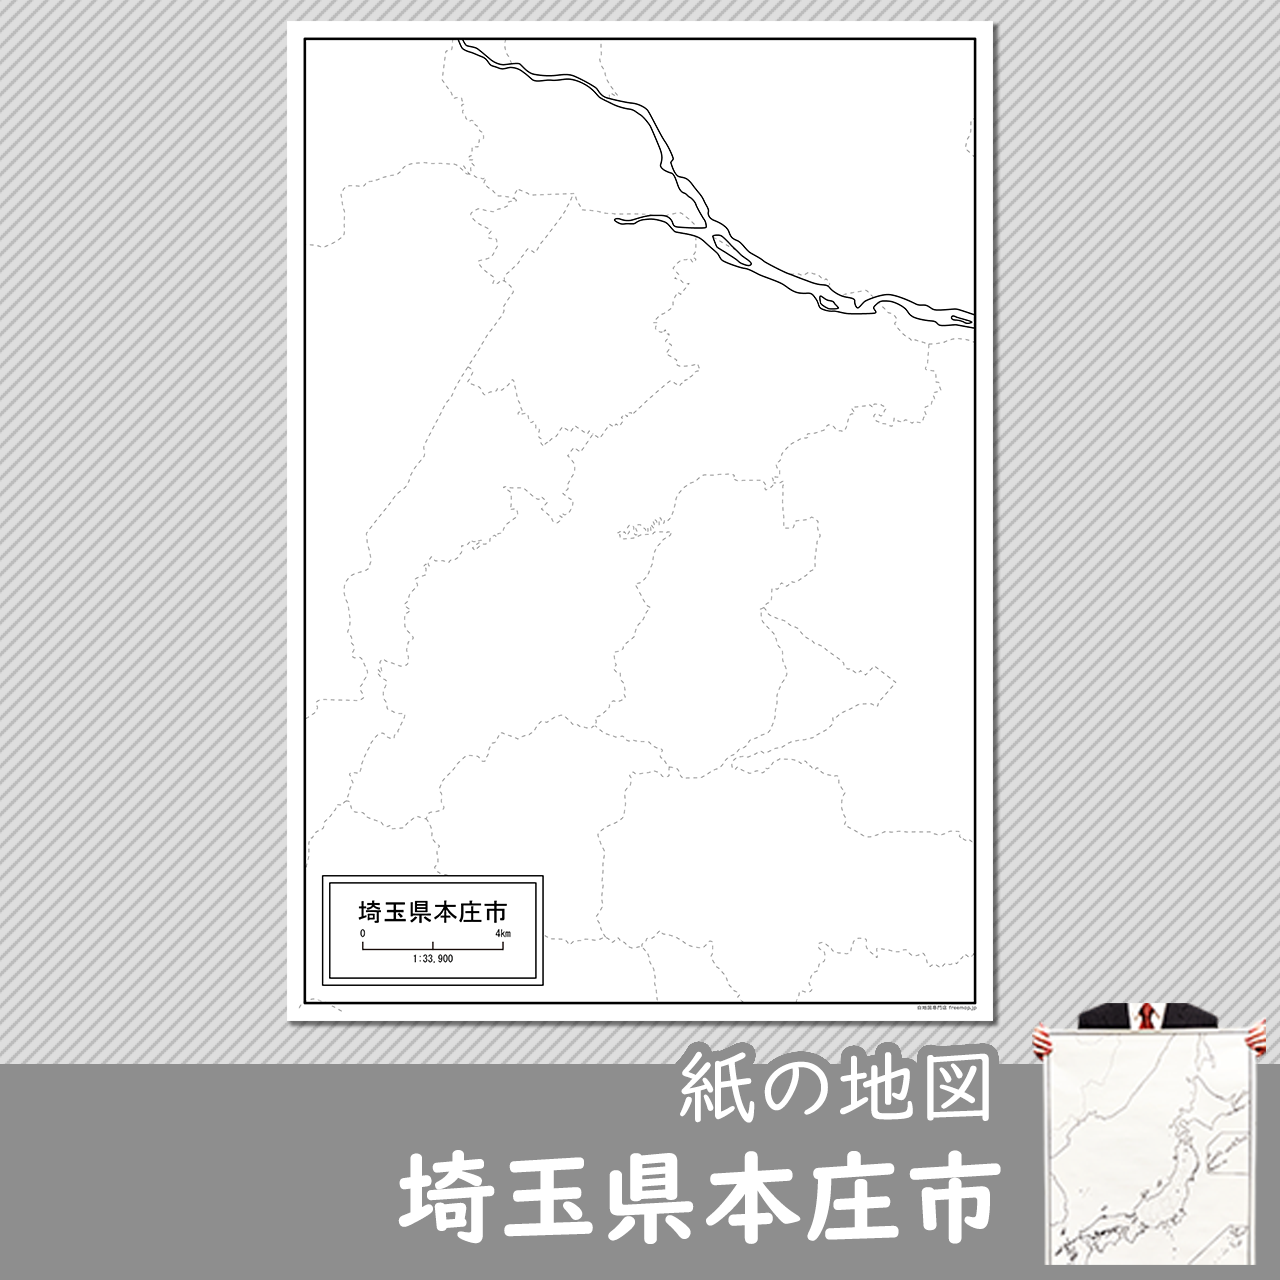 本庄市の紙の白地図のサムネイル